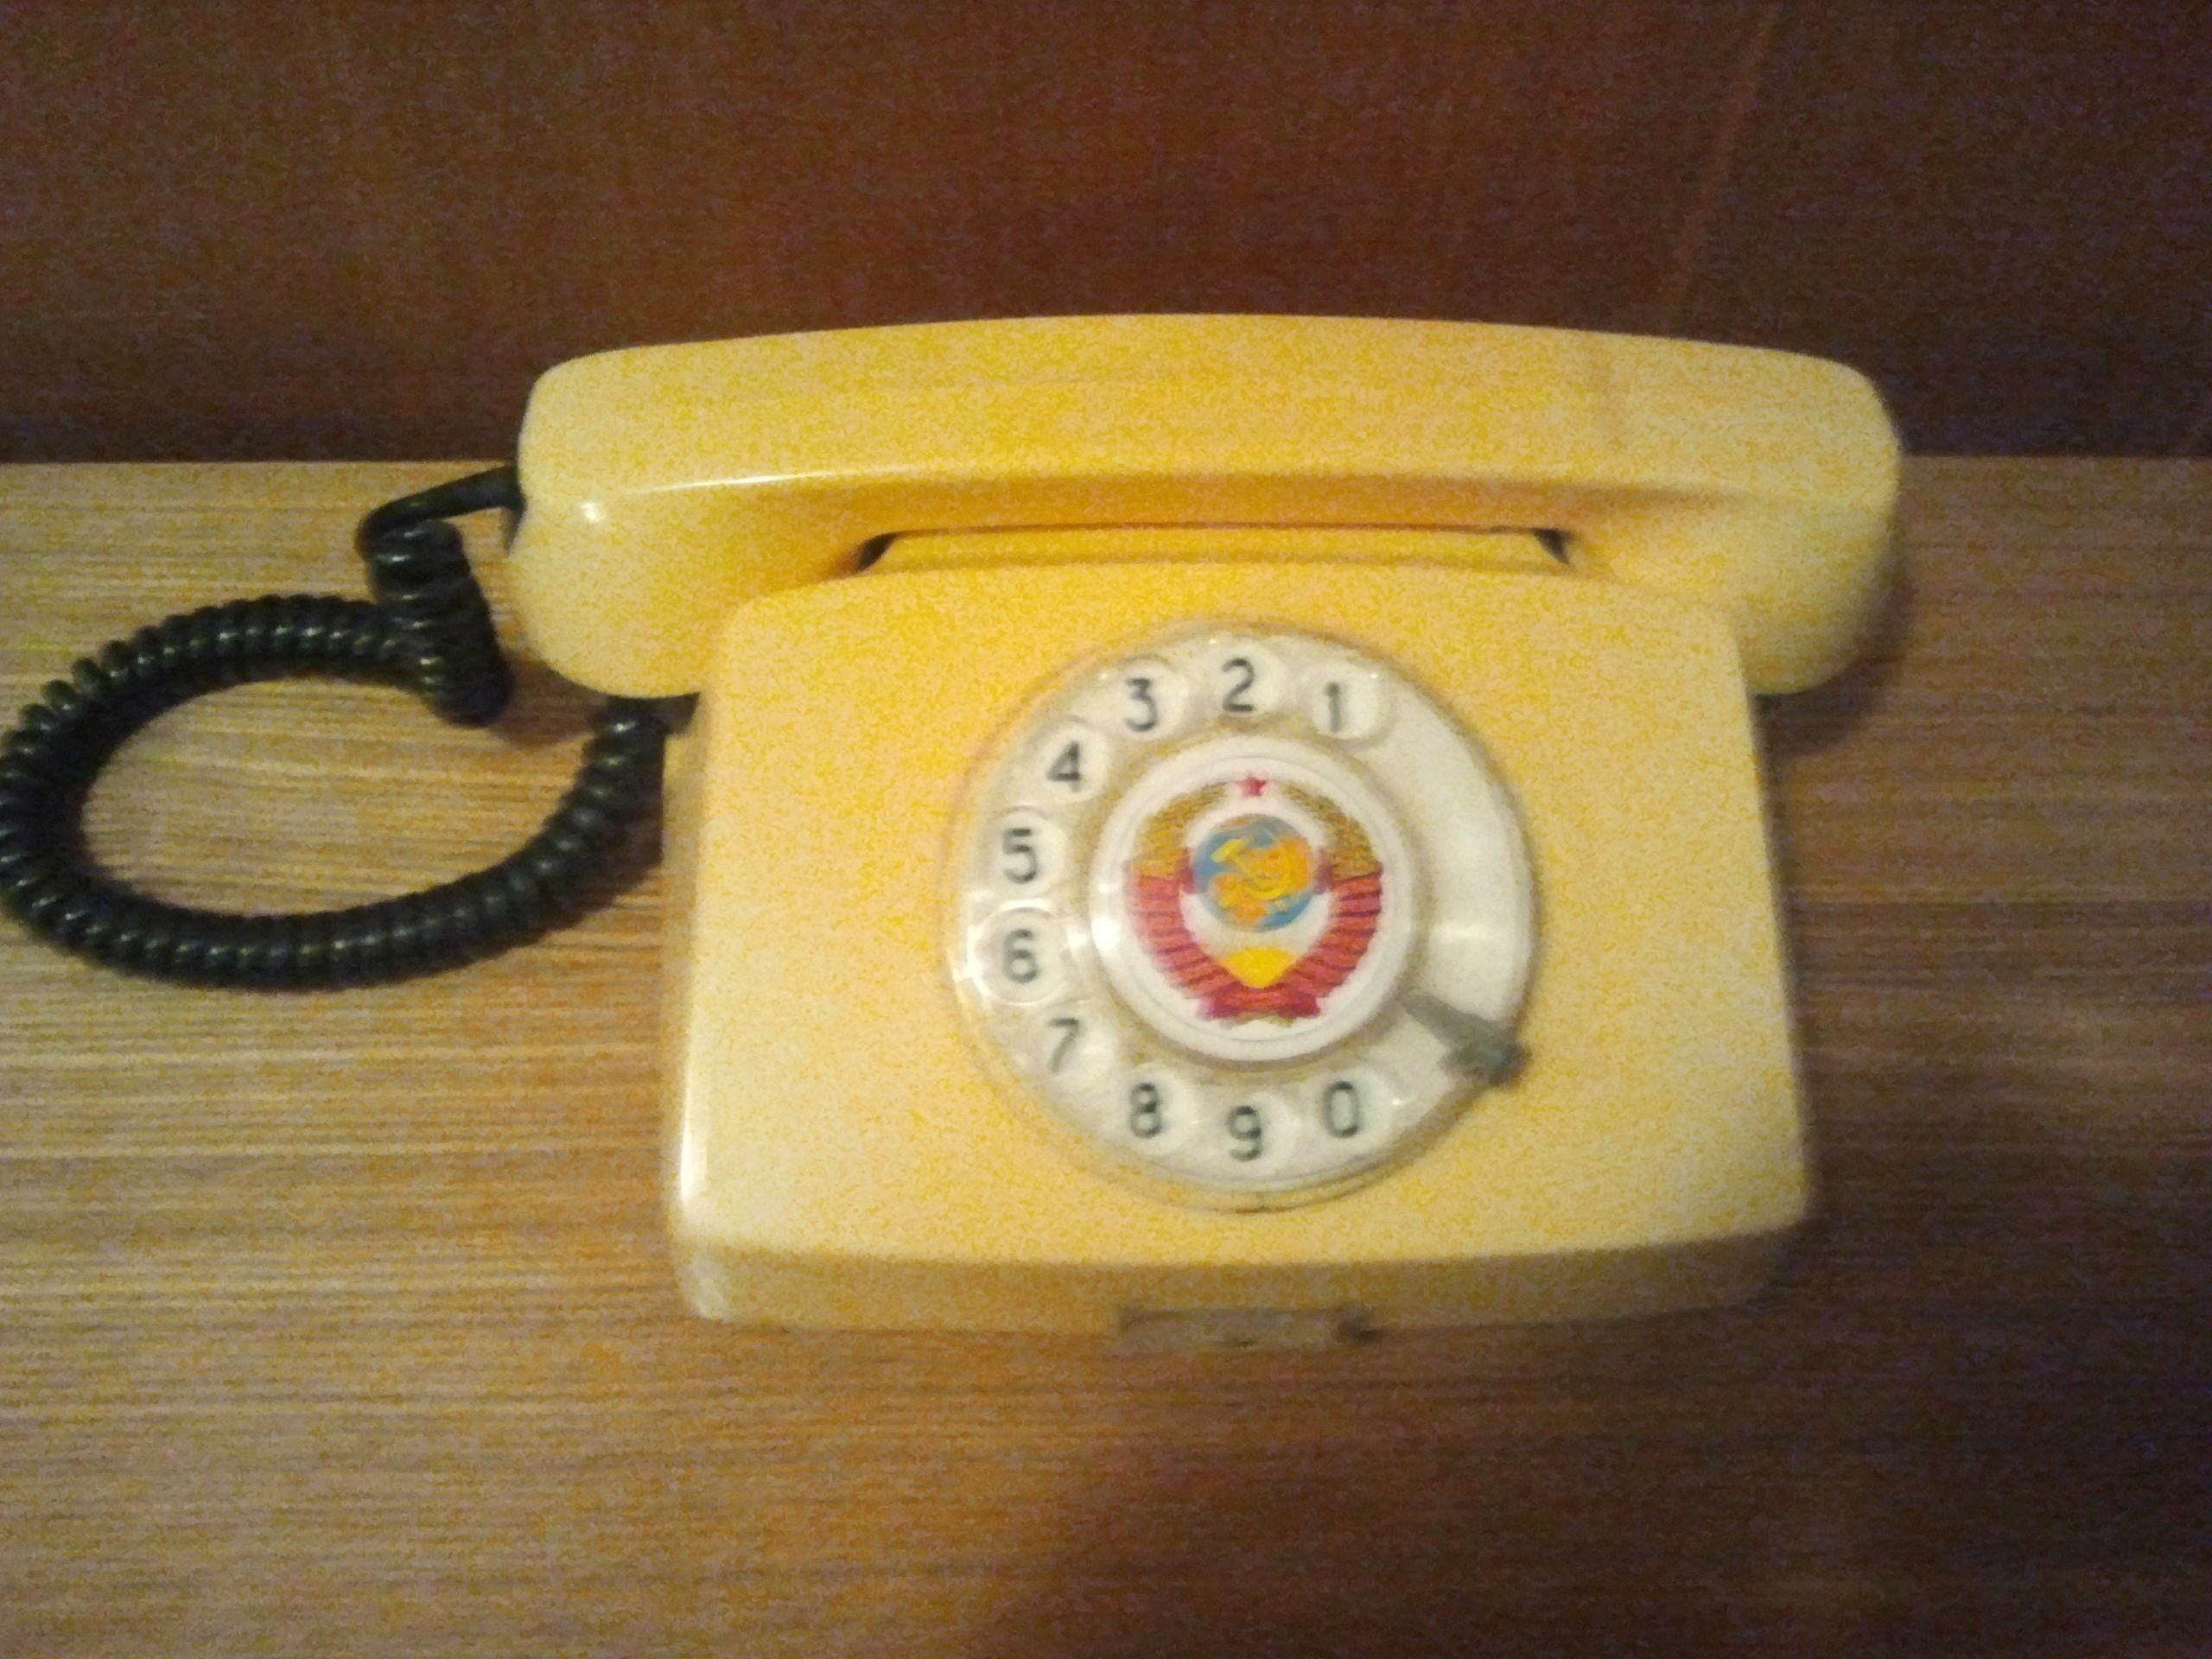 Такой телефон тоже является нарушением литовских законов. Фото из архива "Обзора"